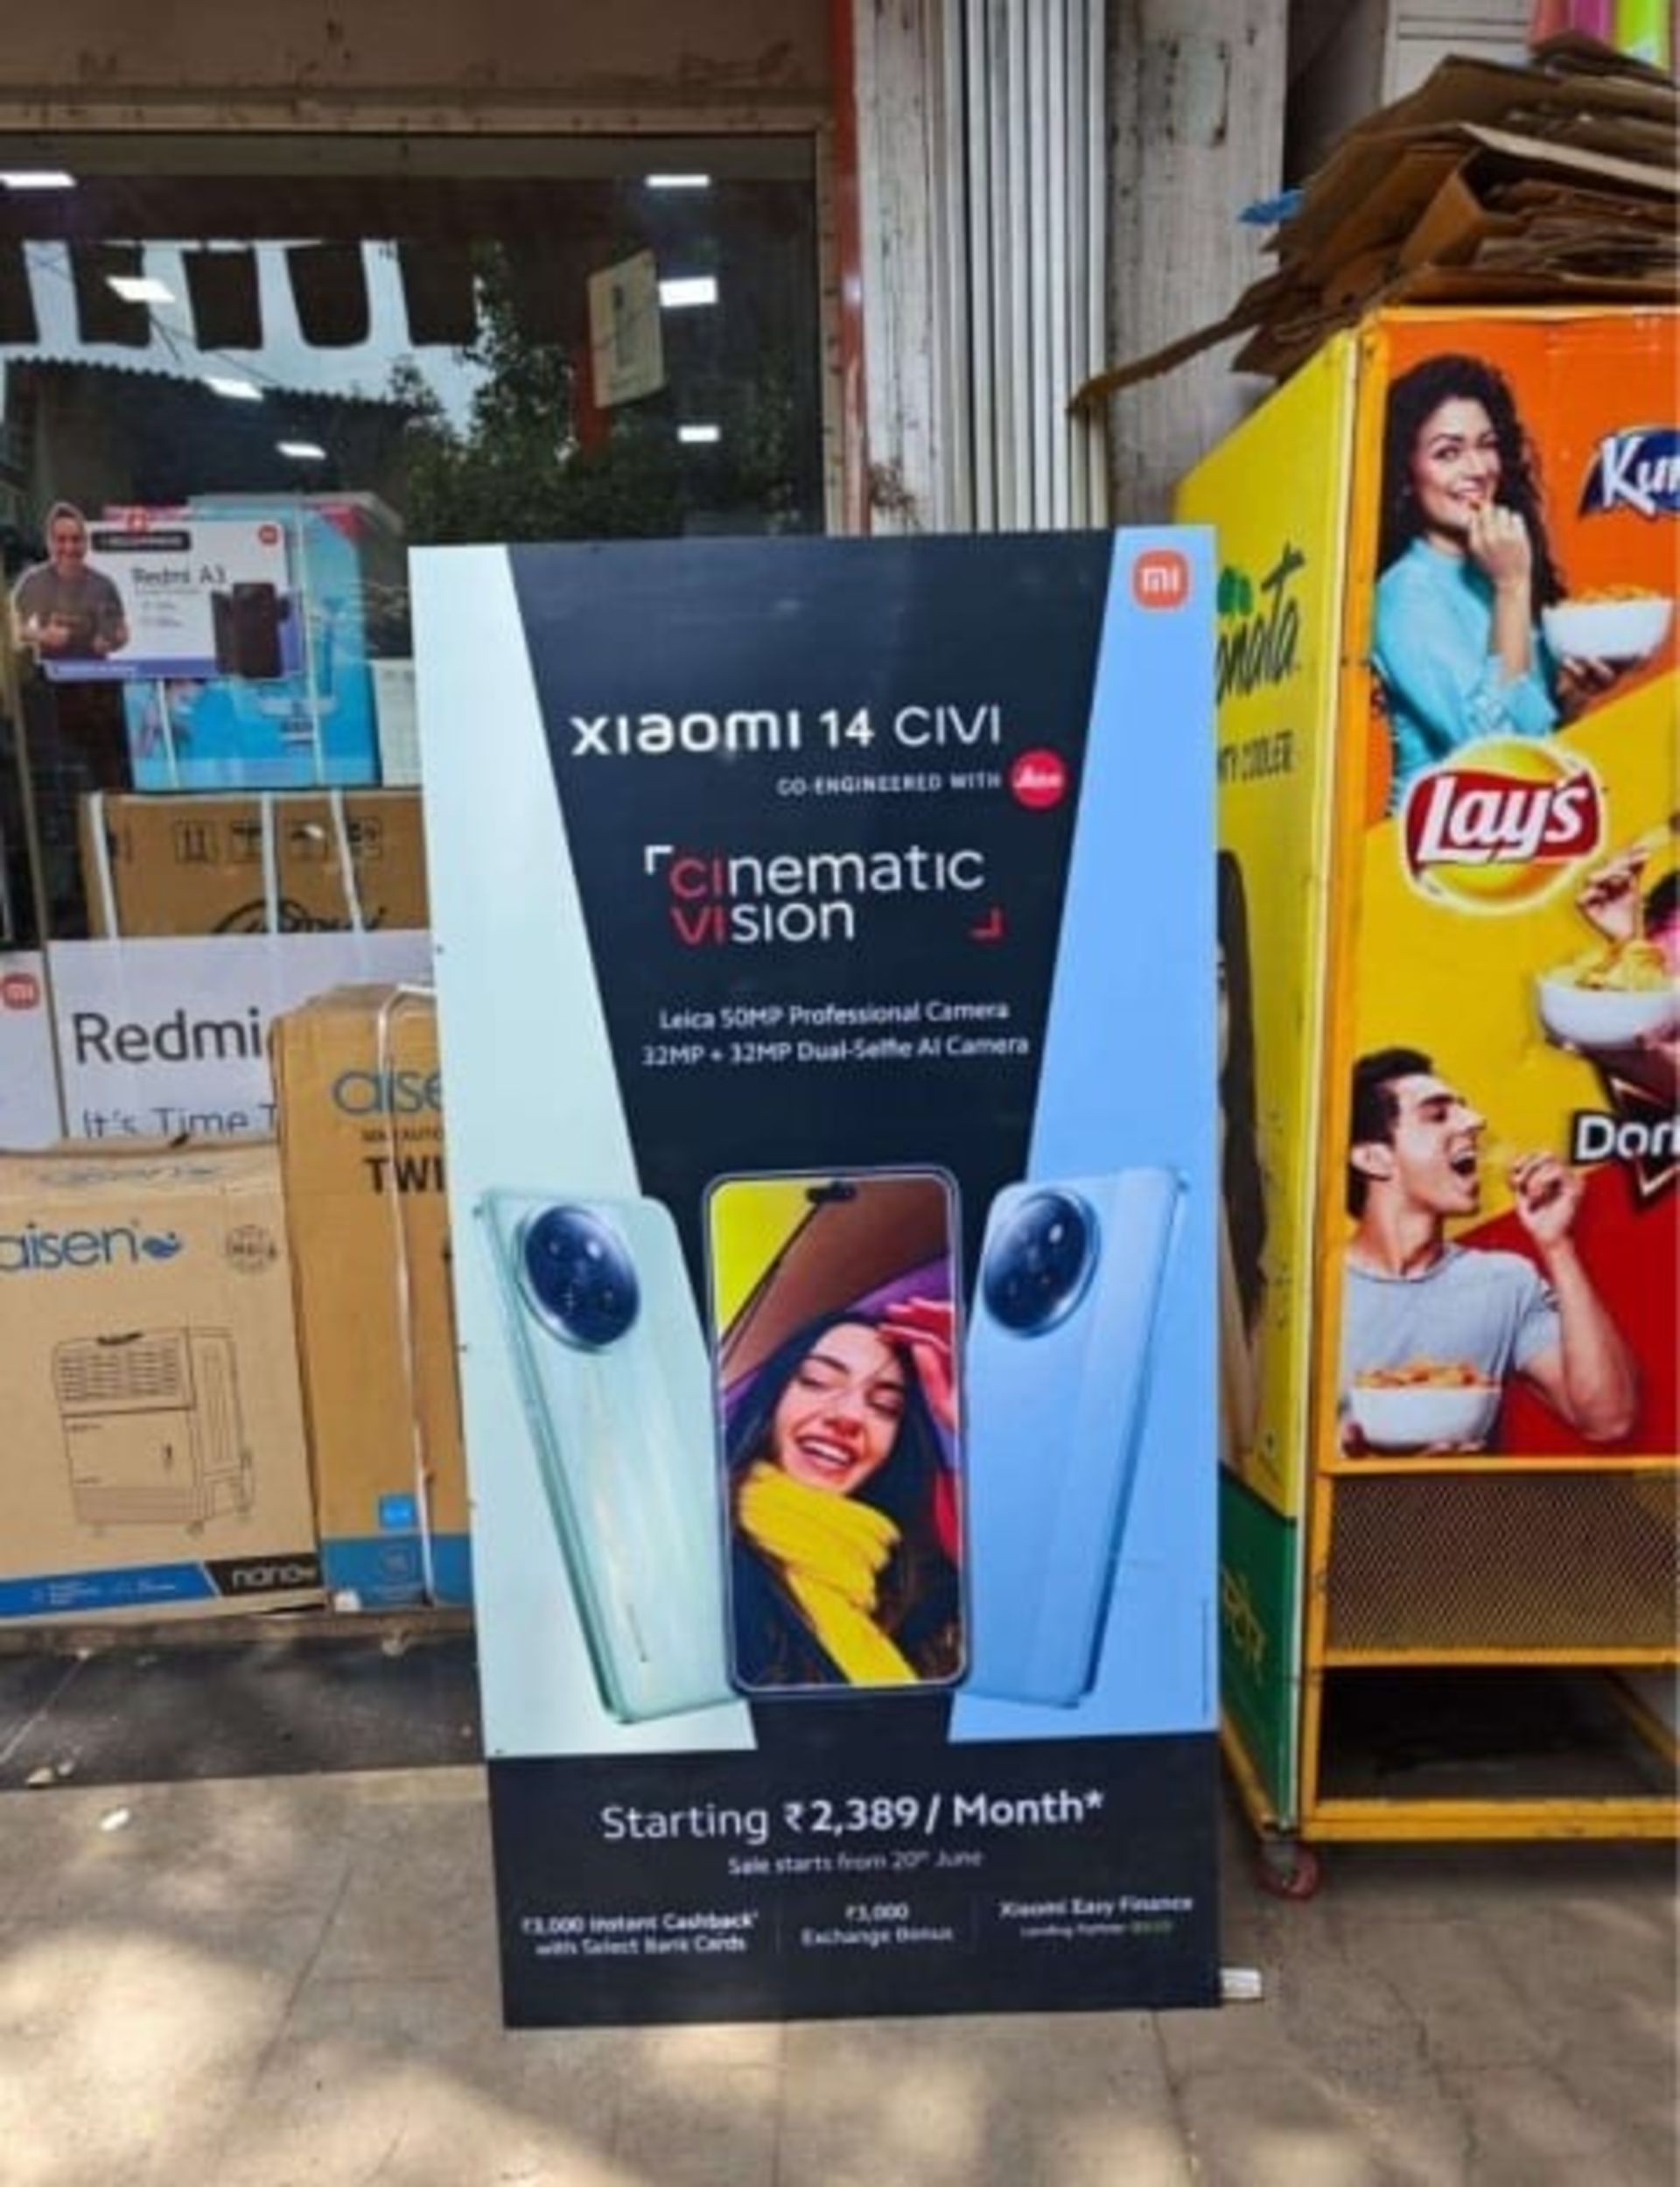 پوستر تبلیغاتی شیائومی ۱۴ سیوی در کنار یک فروشگاه